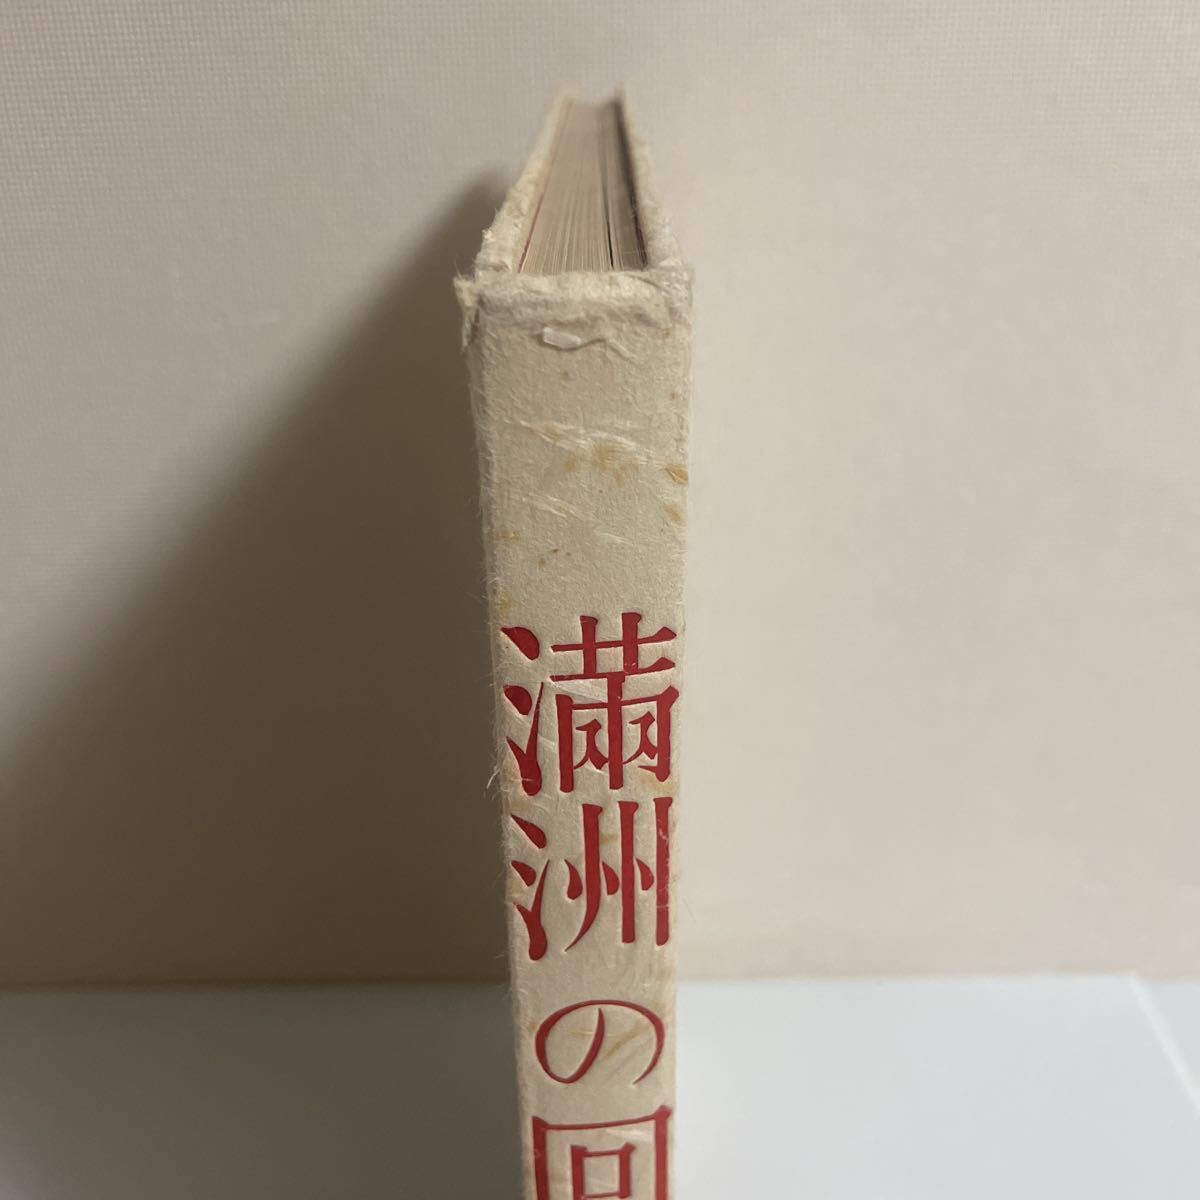 満州の回想 淵上白陽編著 恵雅堂出版 昭和43年発行 3版の入札履歴